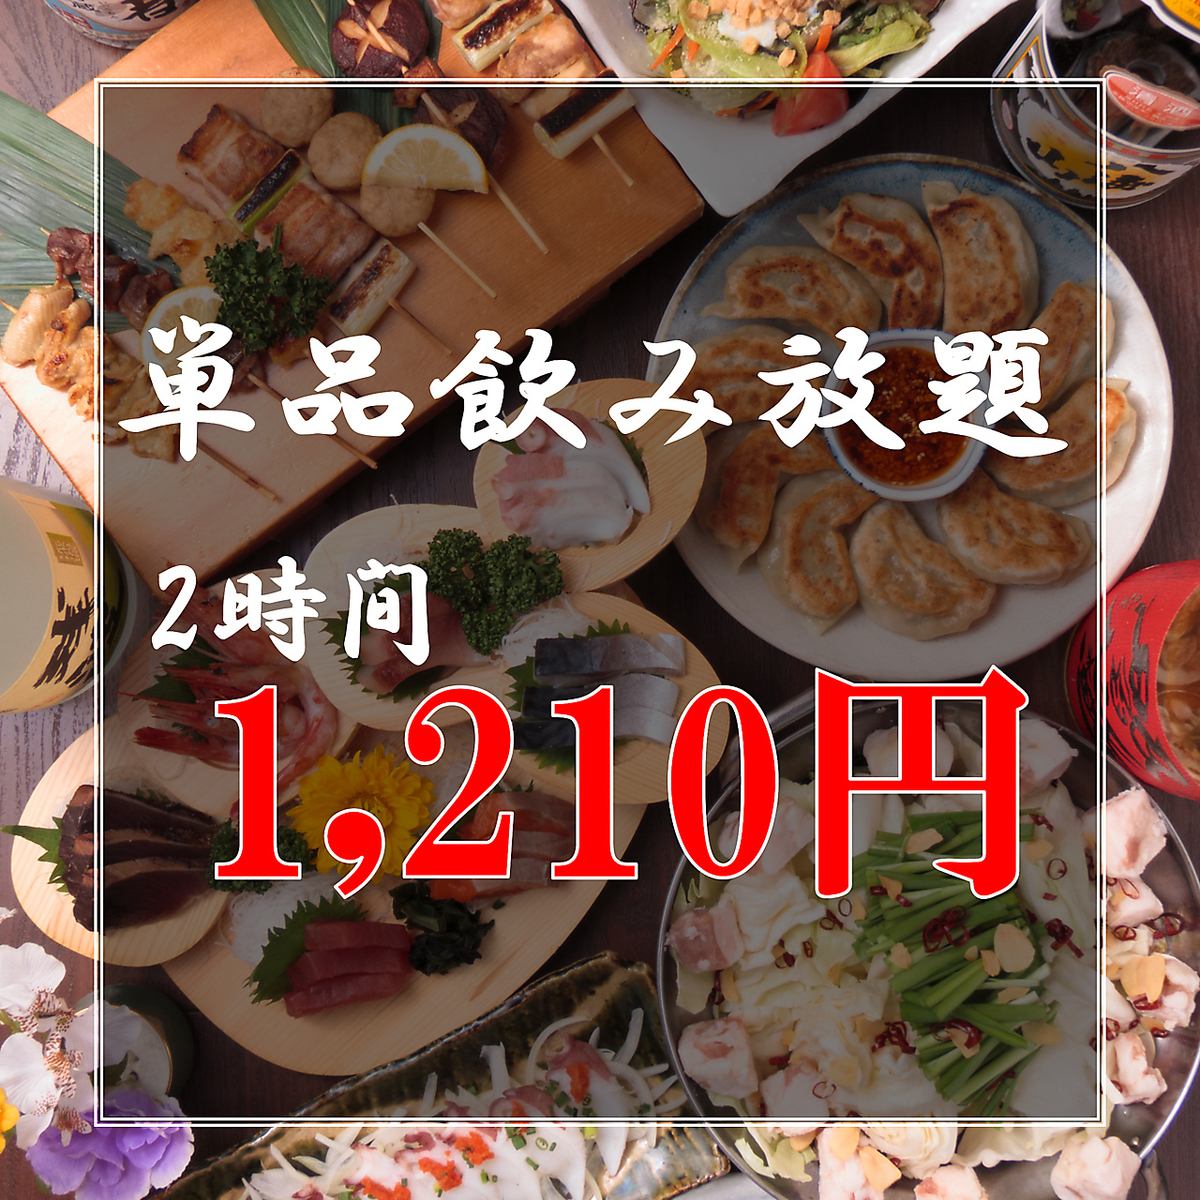 欢迎午餐！限时2小时无限畅饮1,210日元！